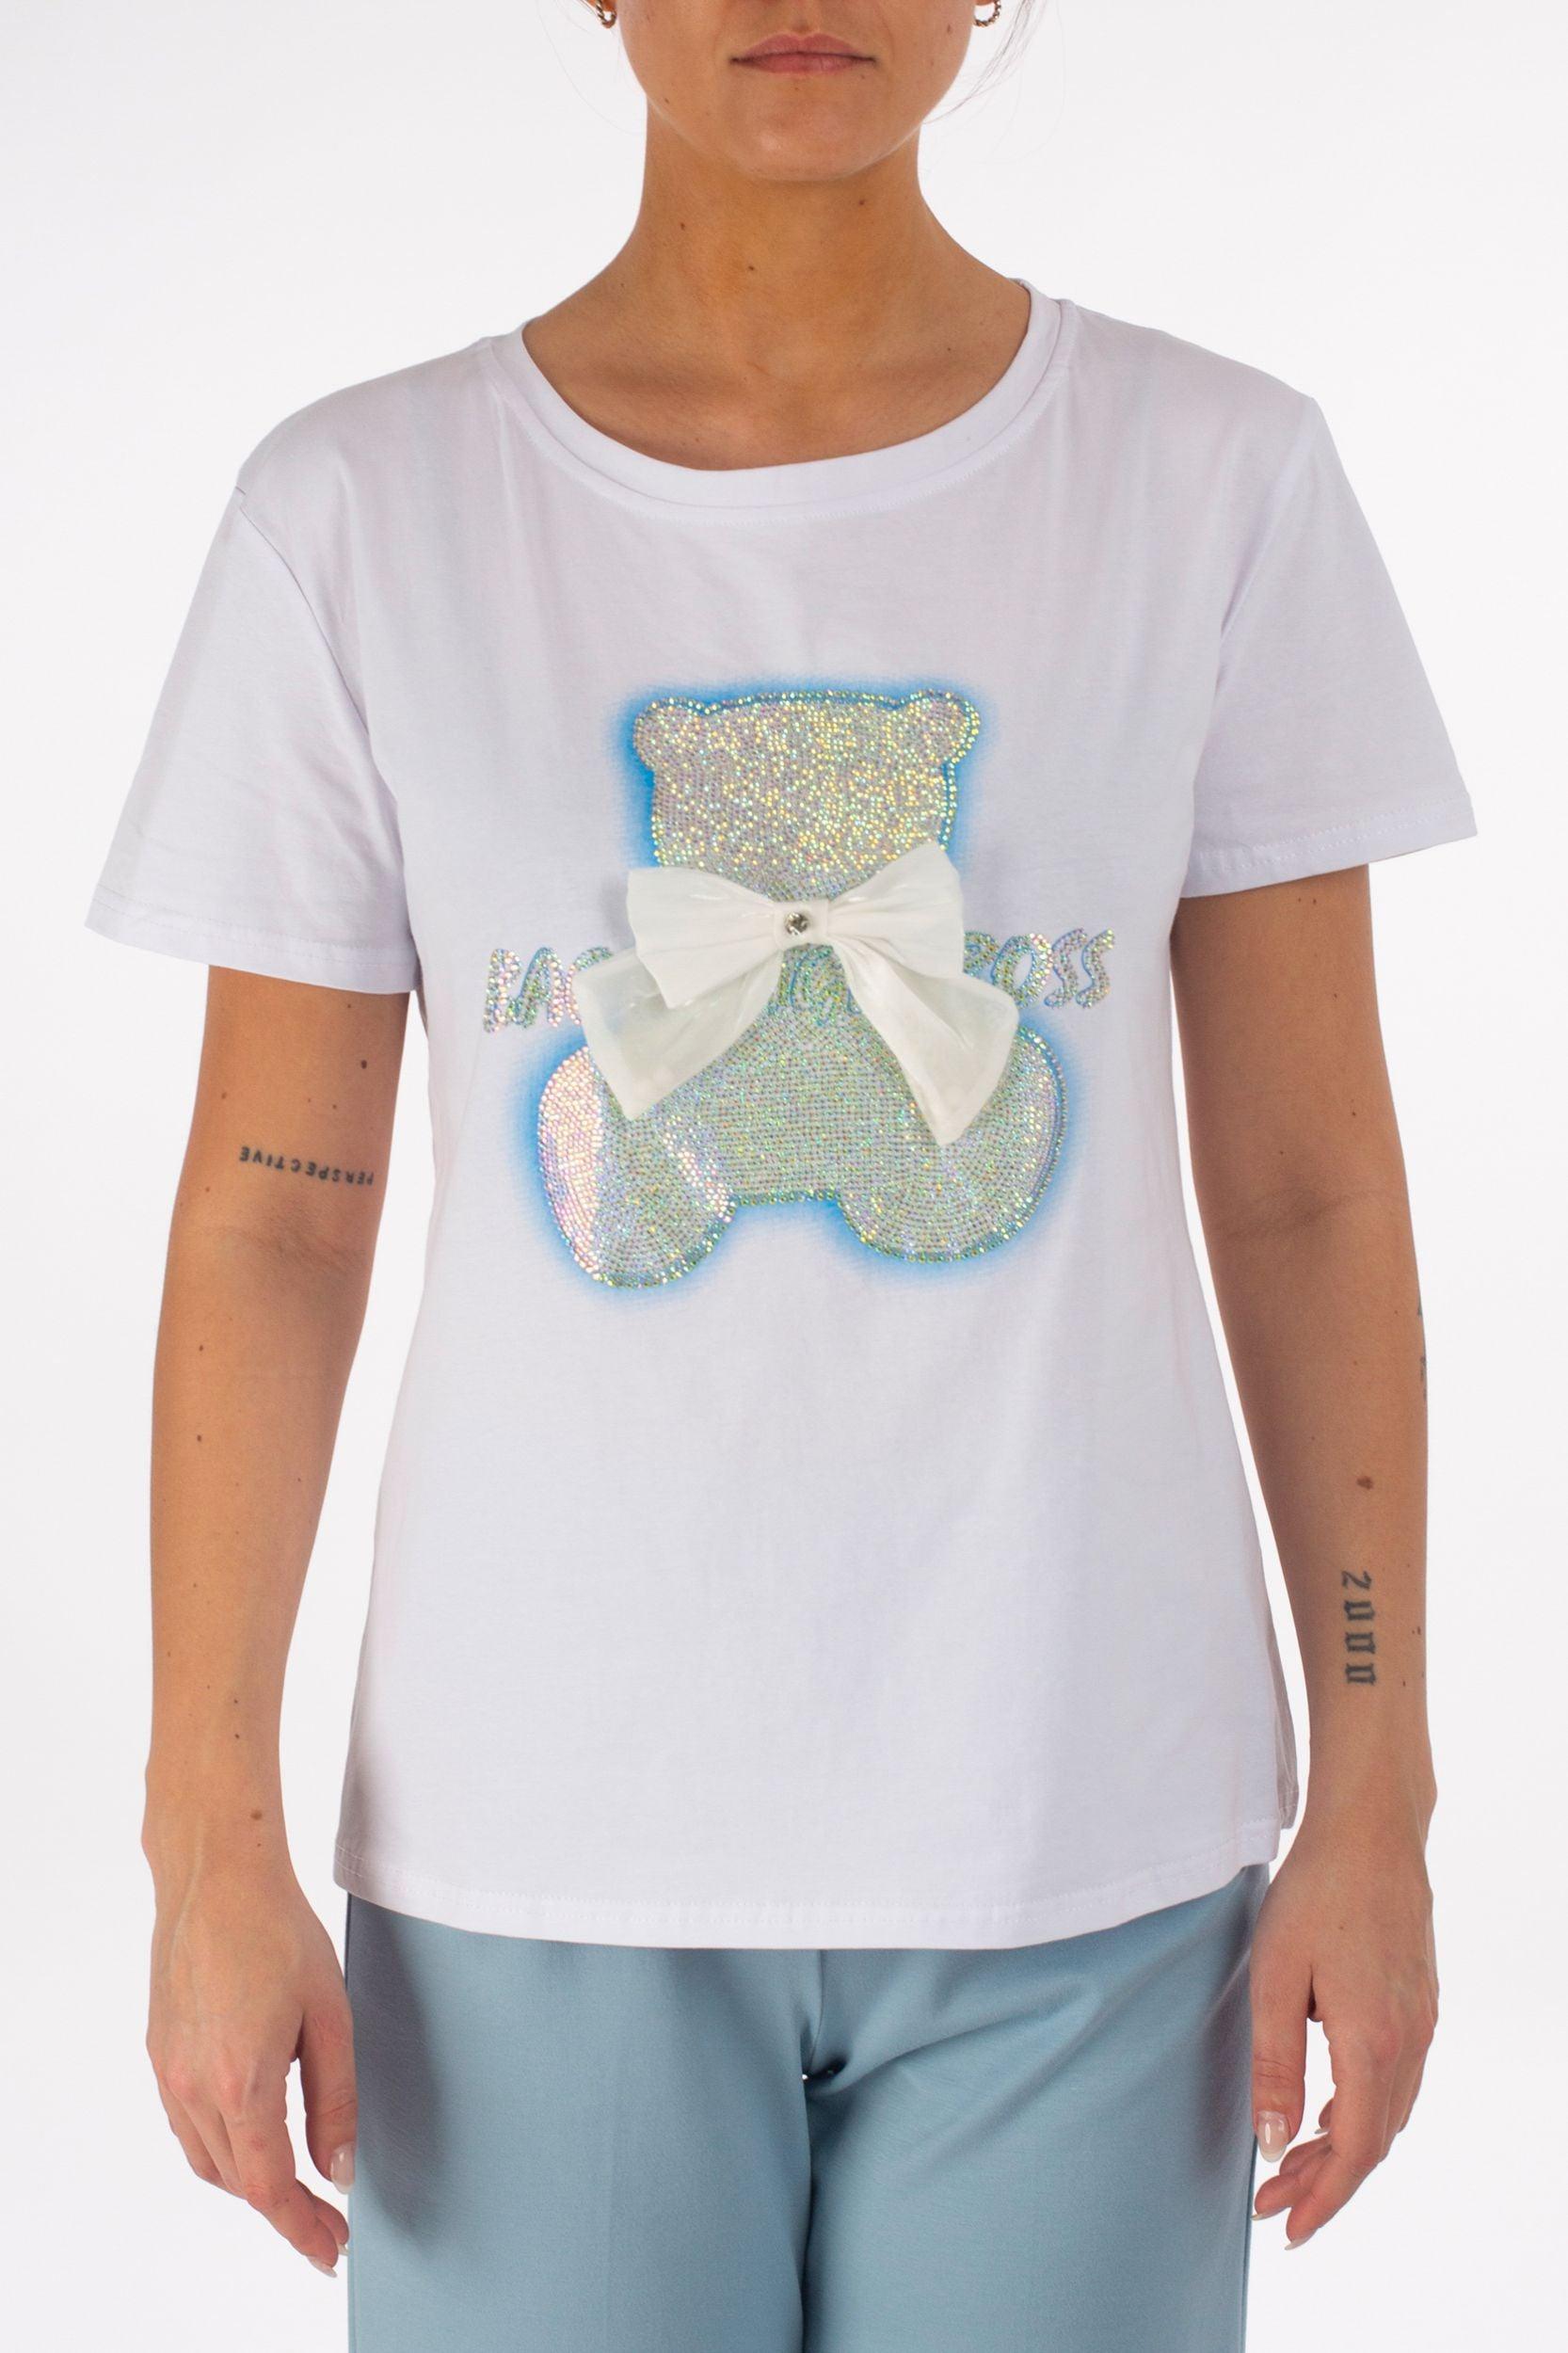 T-Shirt "Teddybär" - La Strada